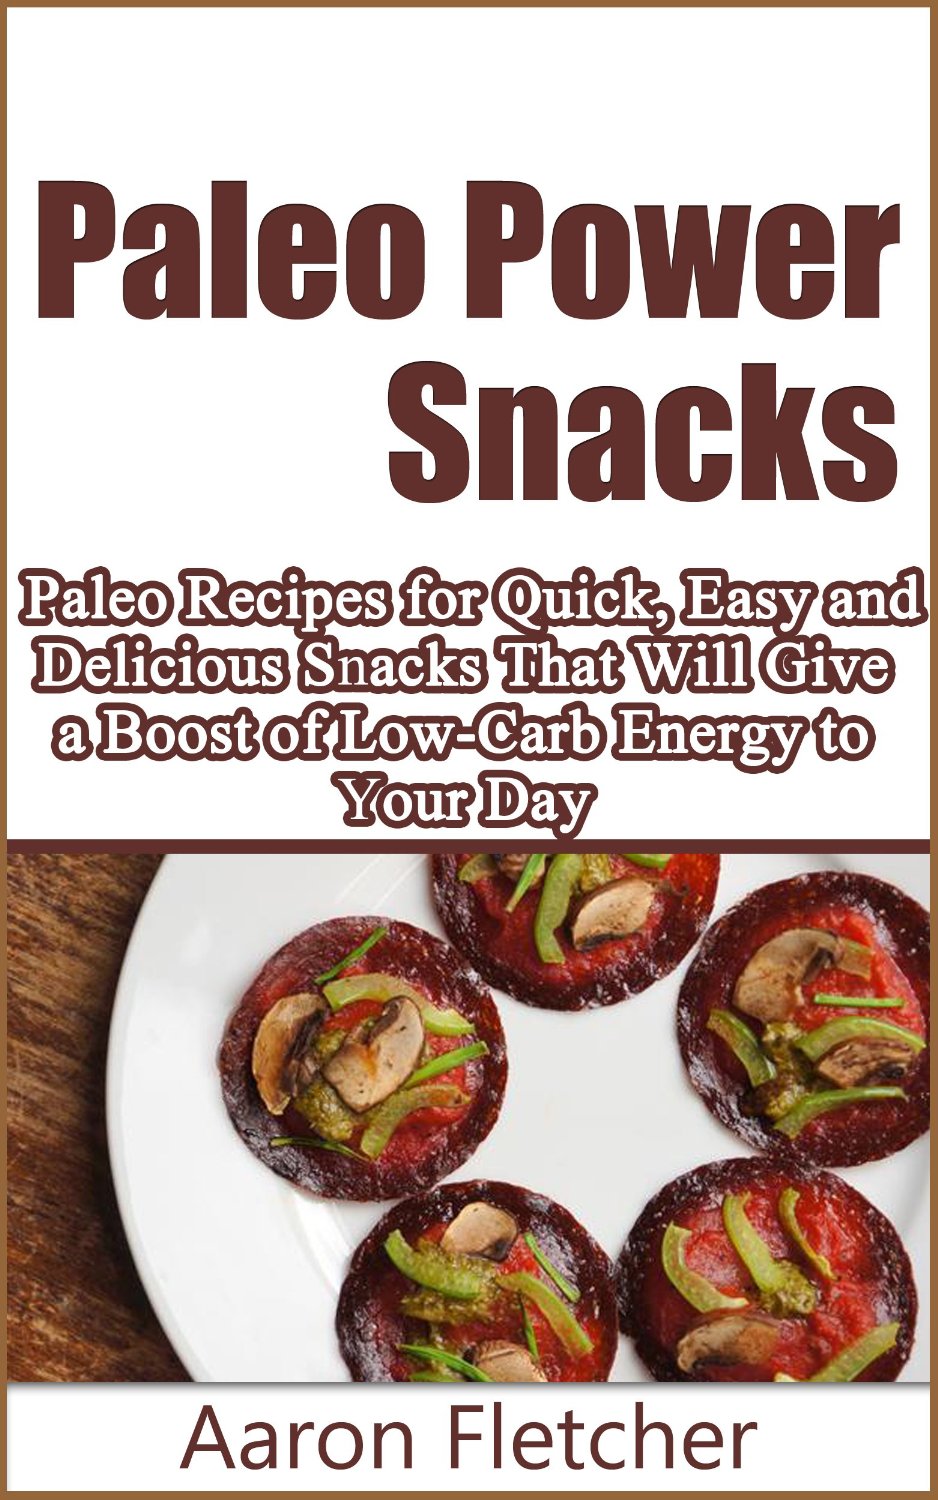 Paleo Power Snacks by Aaron Fletcher